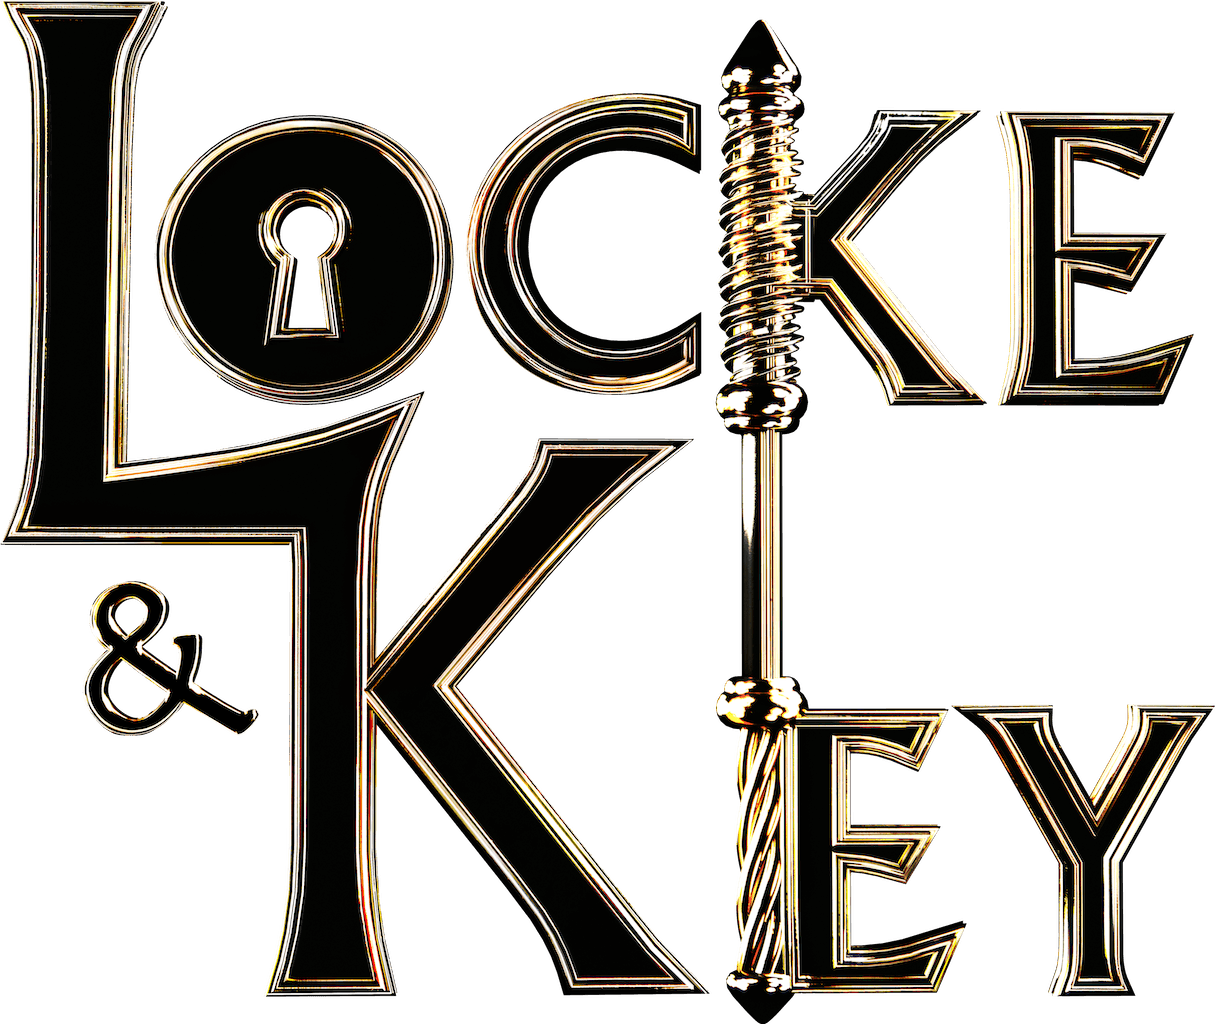 Locke & Key logo